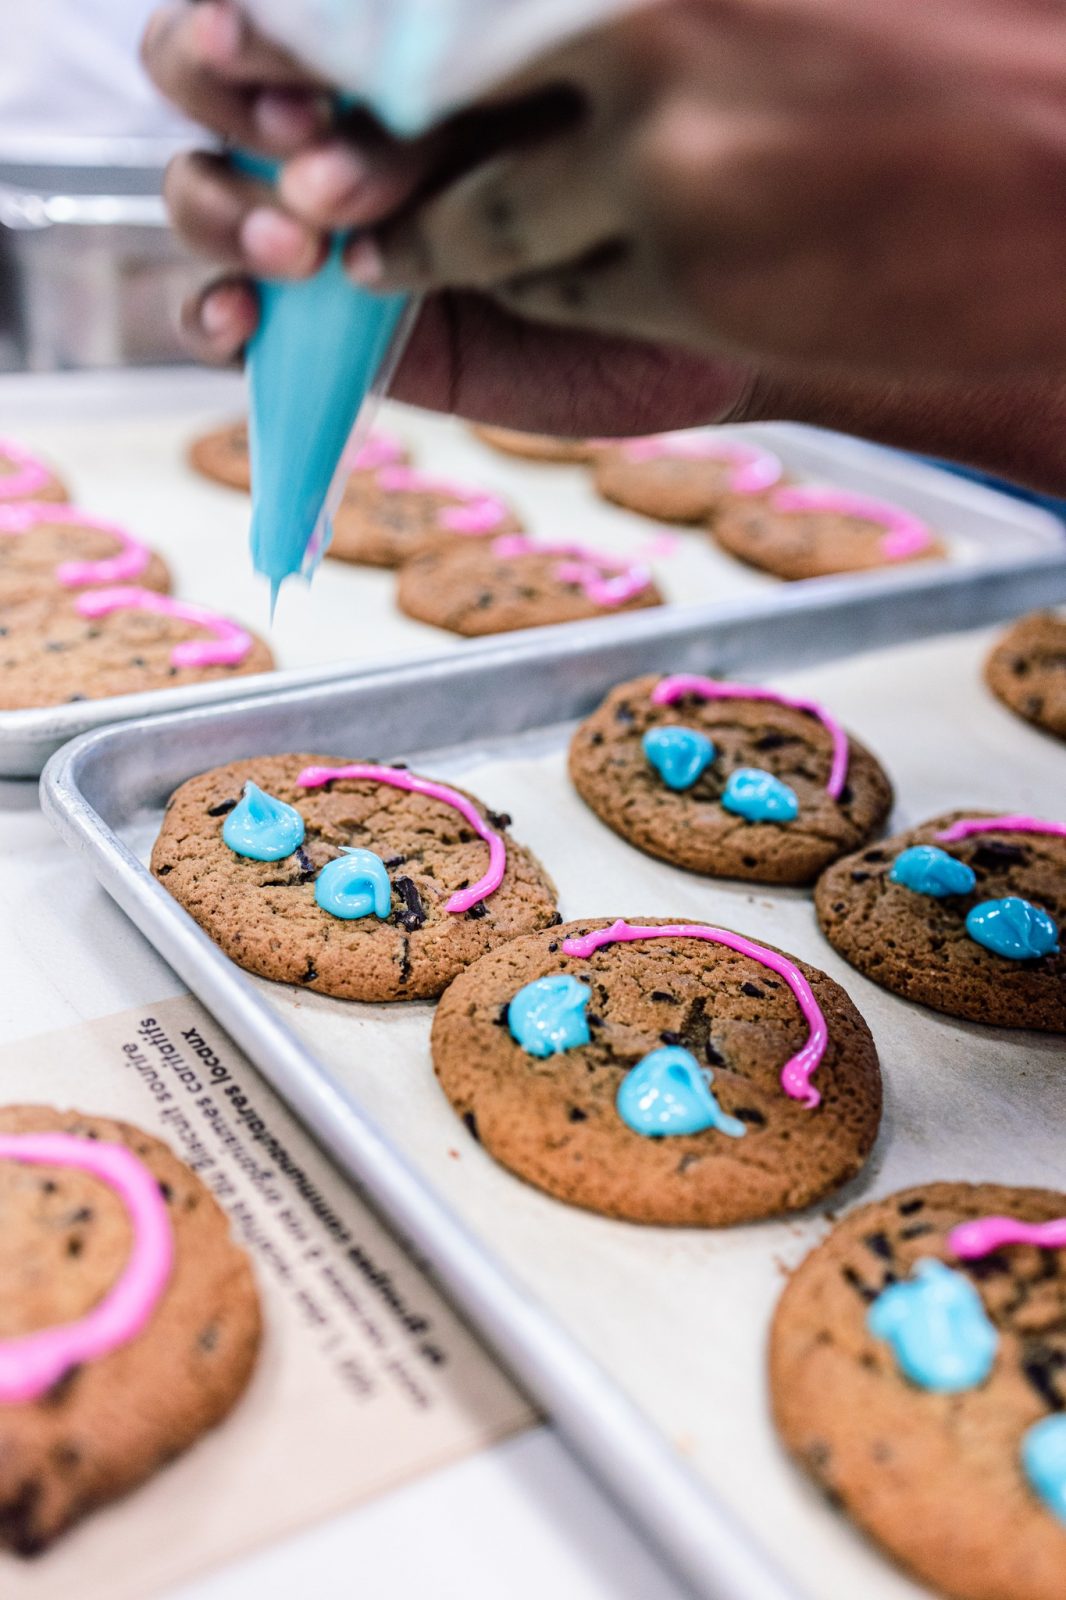 Les biscuits sourires rapportent 27 000 $ à Drummondville